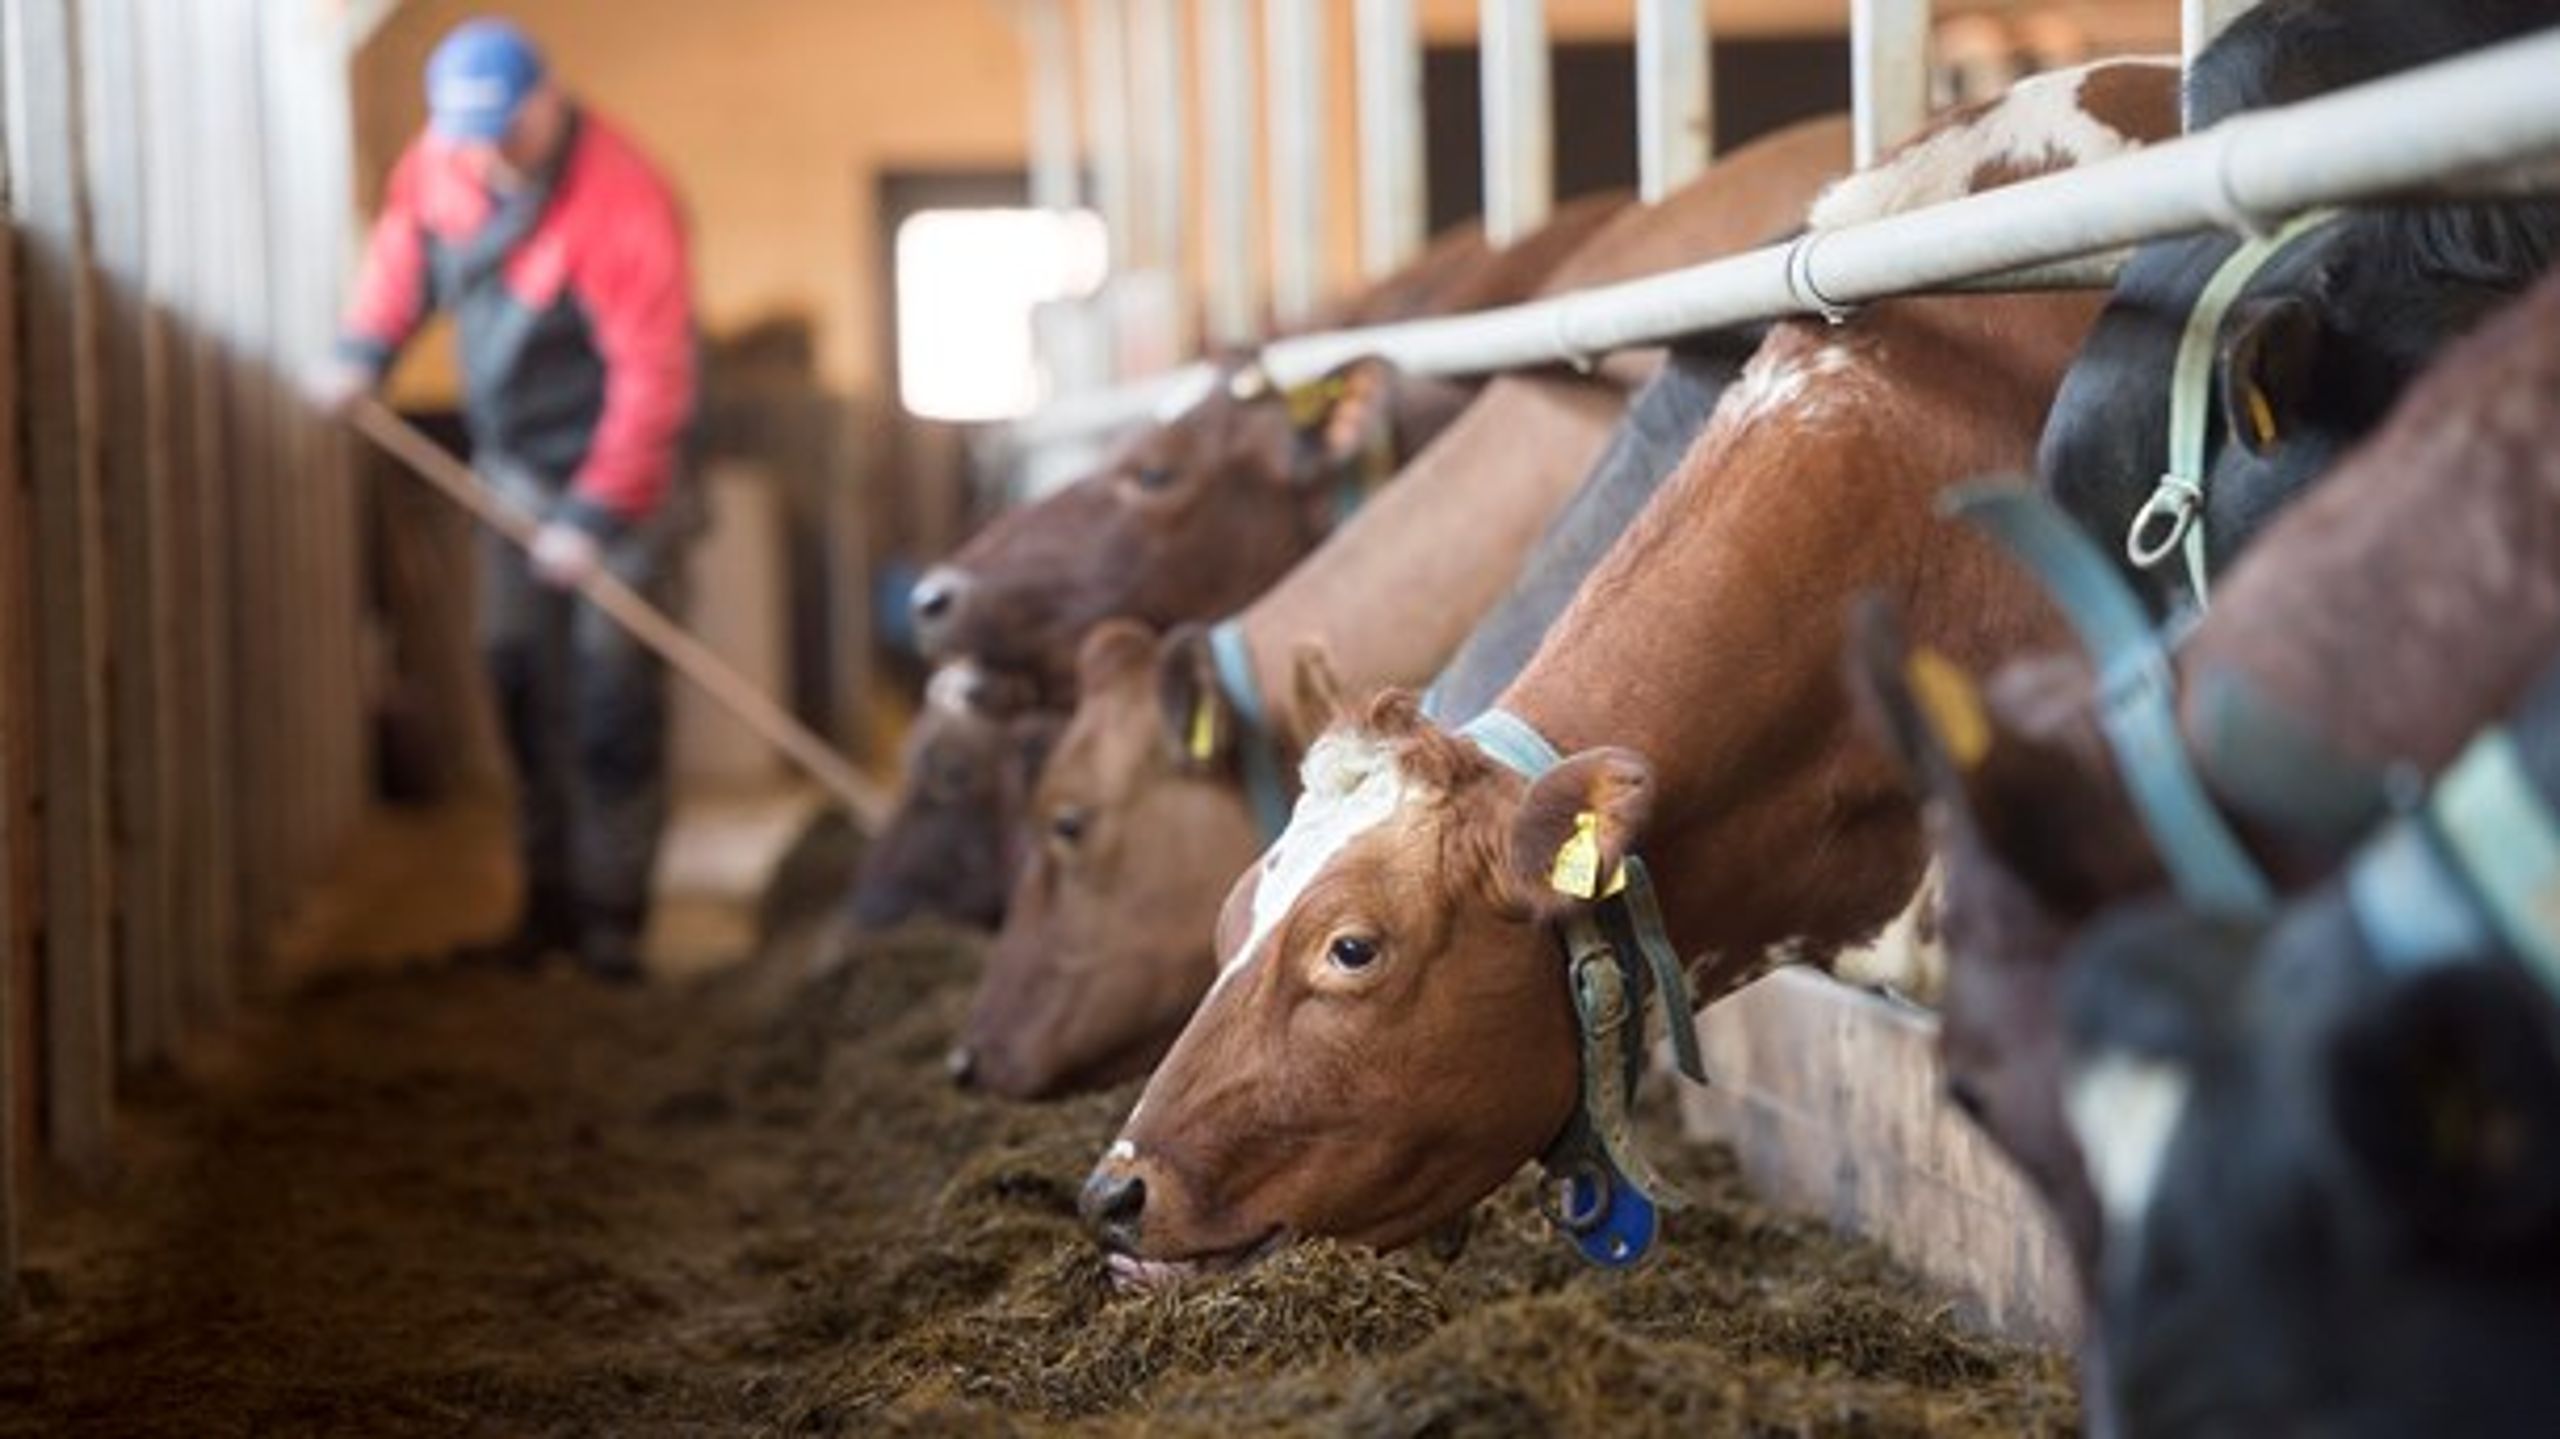 "LRF:s genomgång av de senaste fem årens miljötillståndsansökningar från mjölkgårdar visade att det i genomsnitt tar 18 månader att få ett miljötillstånd."